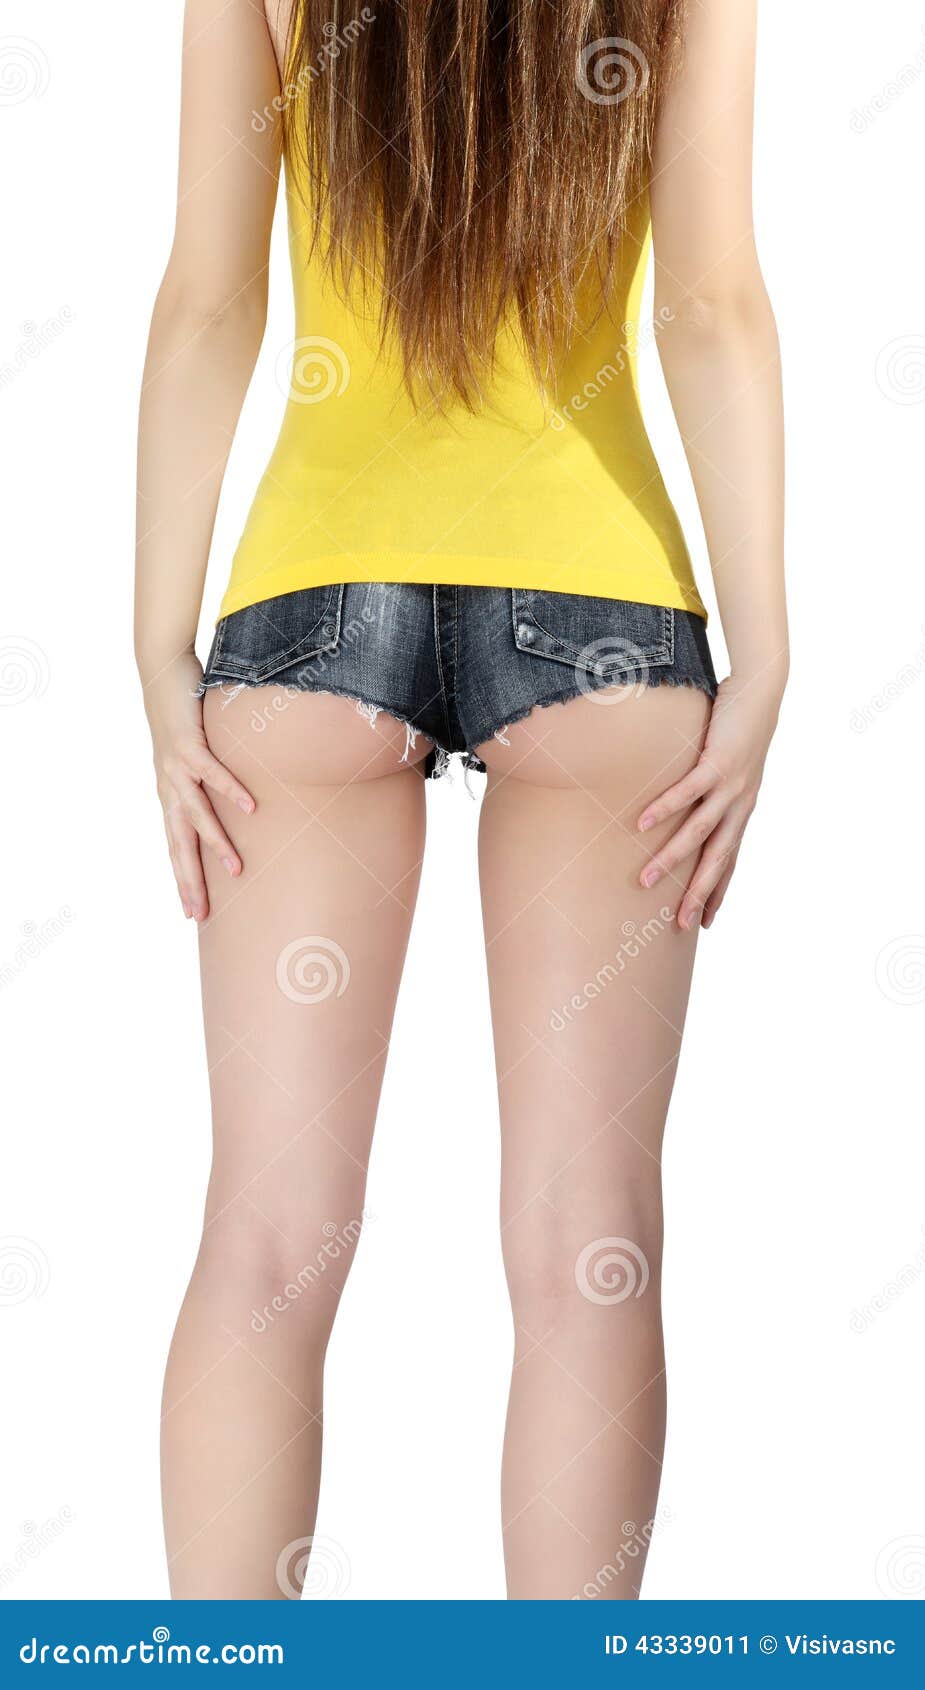 short wearing Hot shorts girls